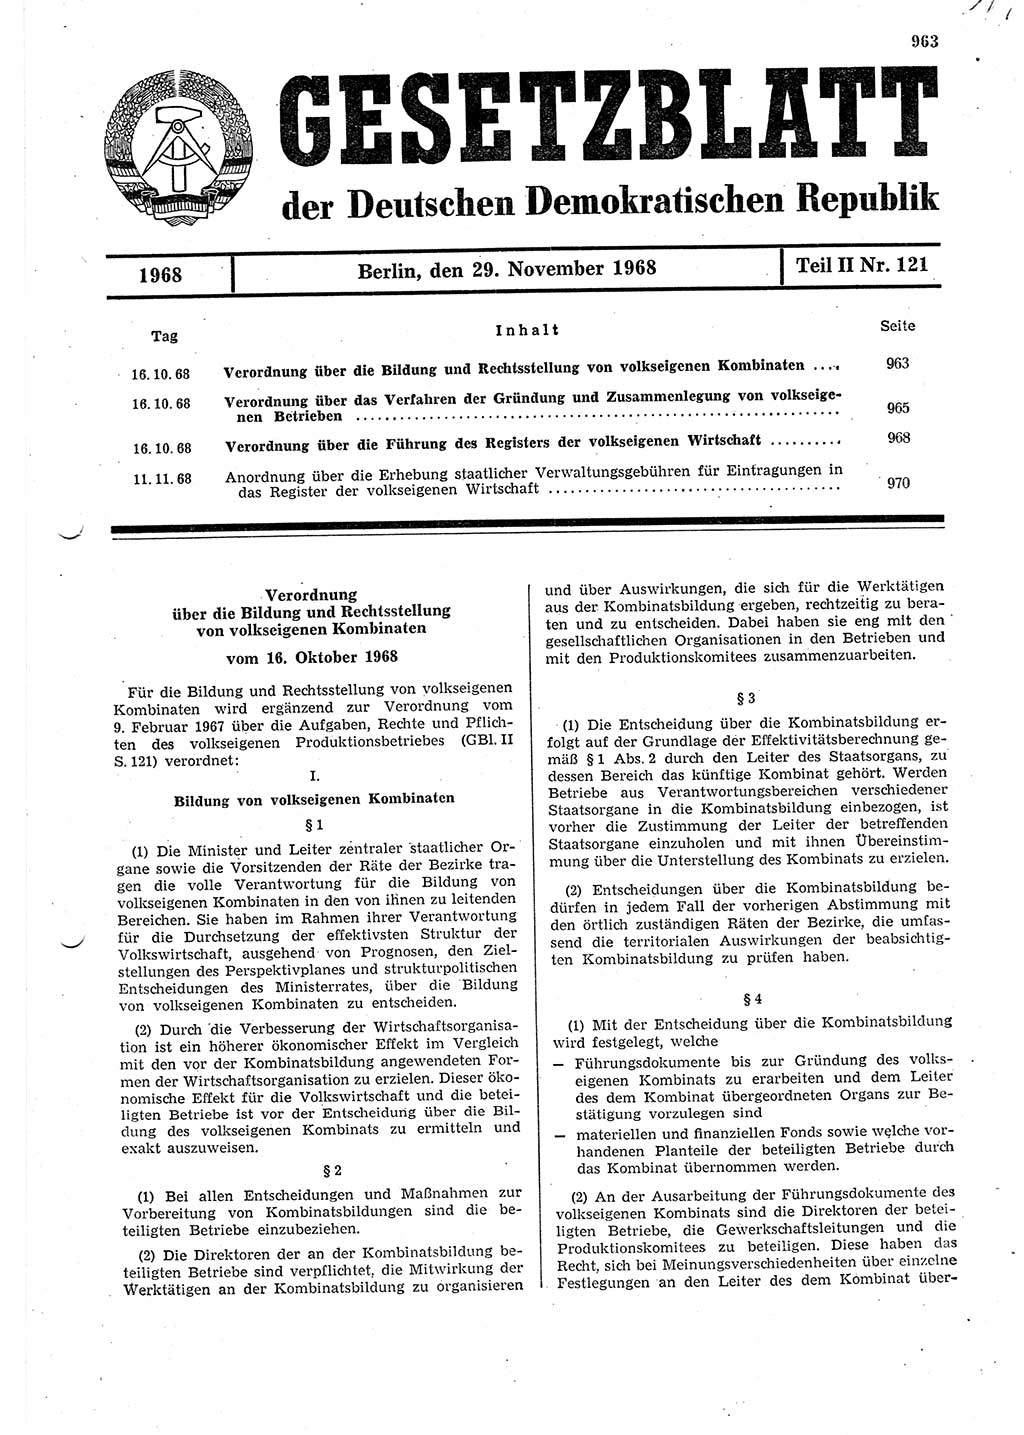 Gesetzblatt (GBl.) der Deutschen Demokratischen Republik (DDR) Teil ⅠⅠ 1968, Seite 963 (GBl. DDR ⅠⅠ 1968, S. 963)